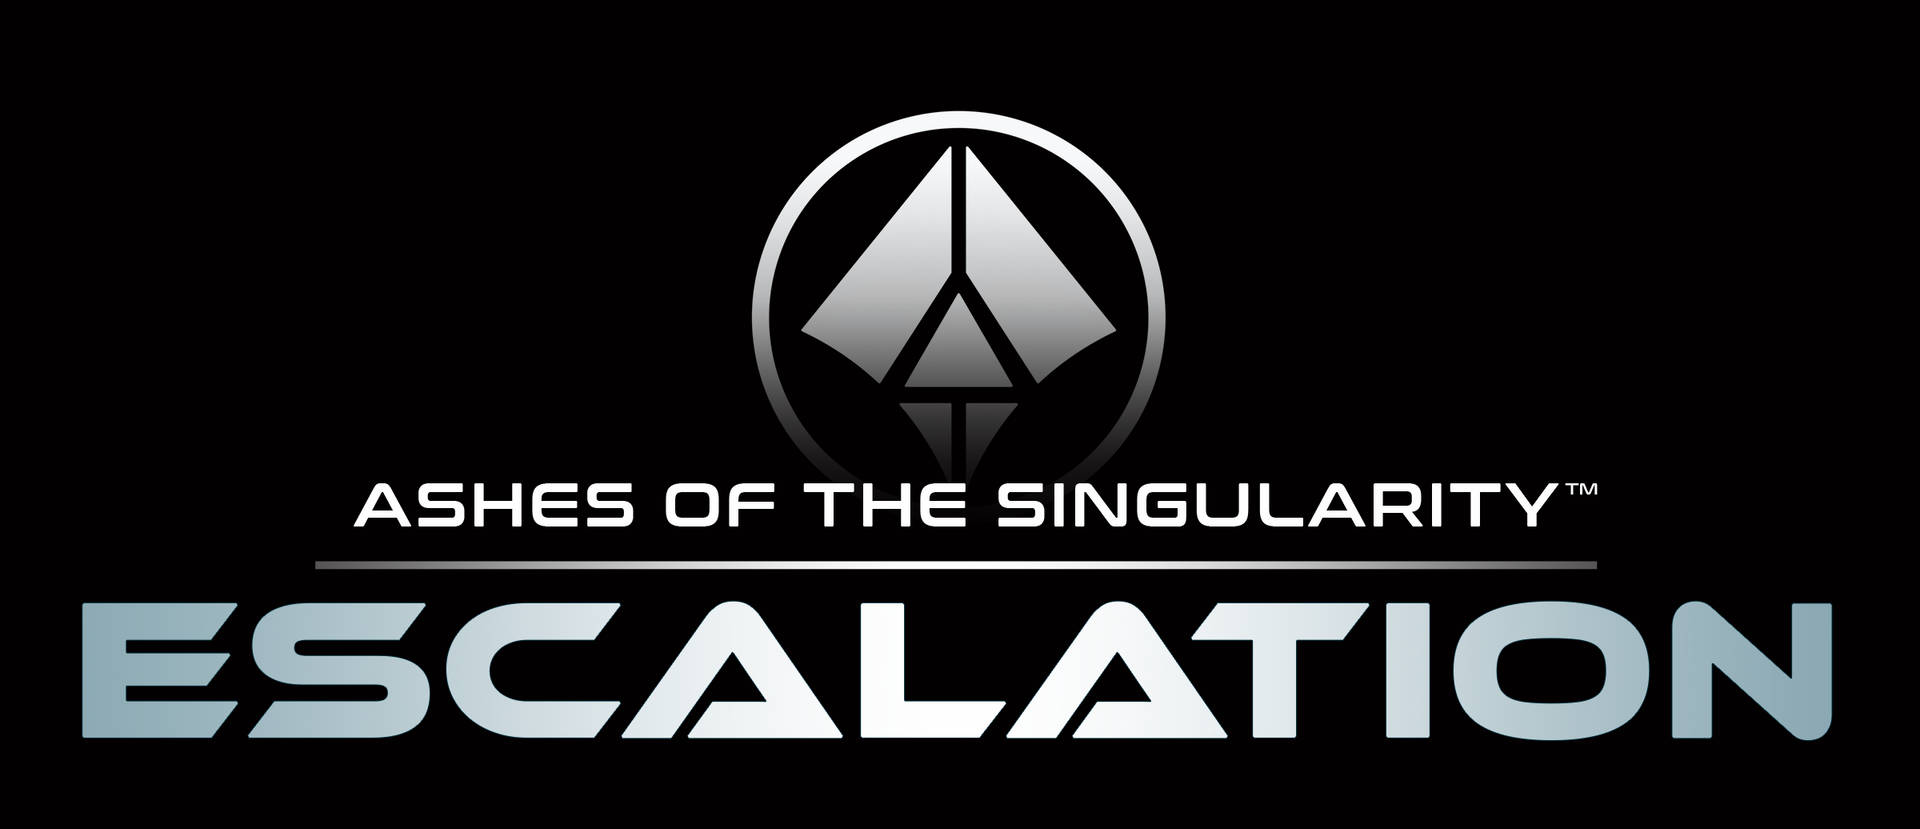 Ashes Of The Singularity Escalation Logo Background